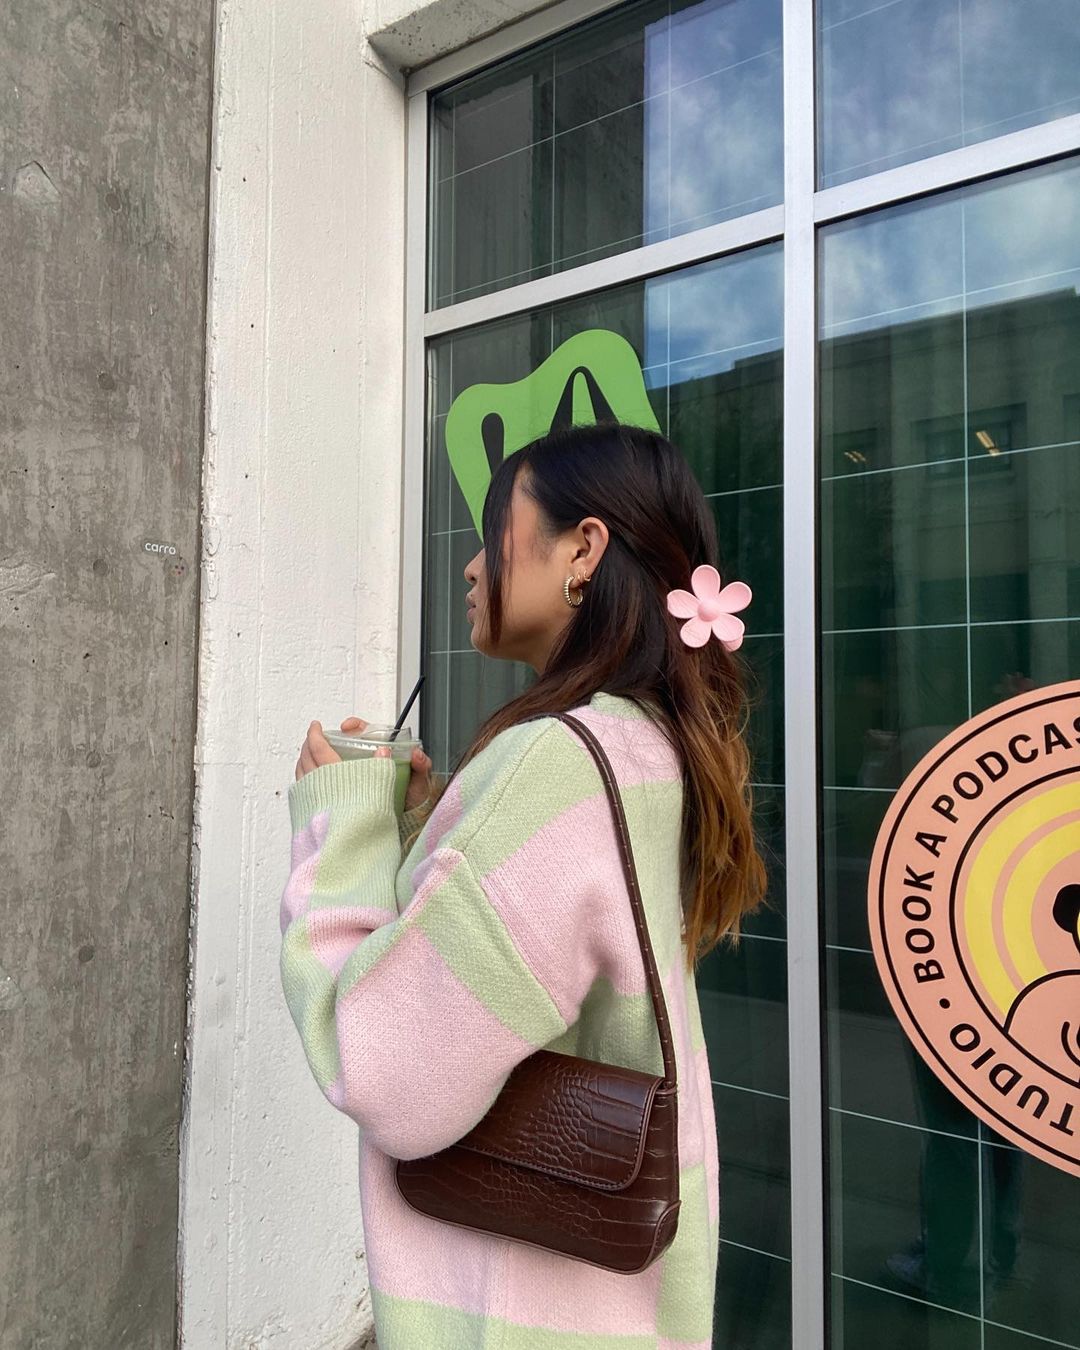 Garota de lado usando cardigan rosa e verde e bolsa marrom pendurada no ombro. Seu cabelo está preso com uma piranha em formato de flor rosa.